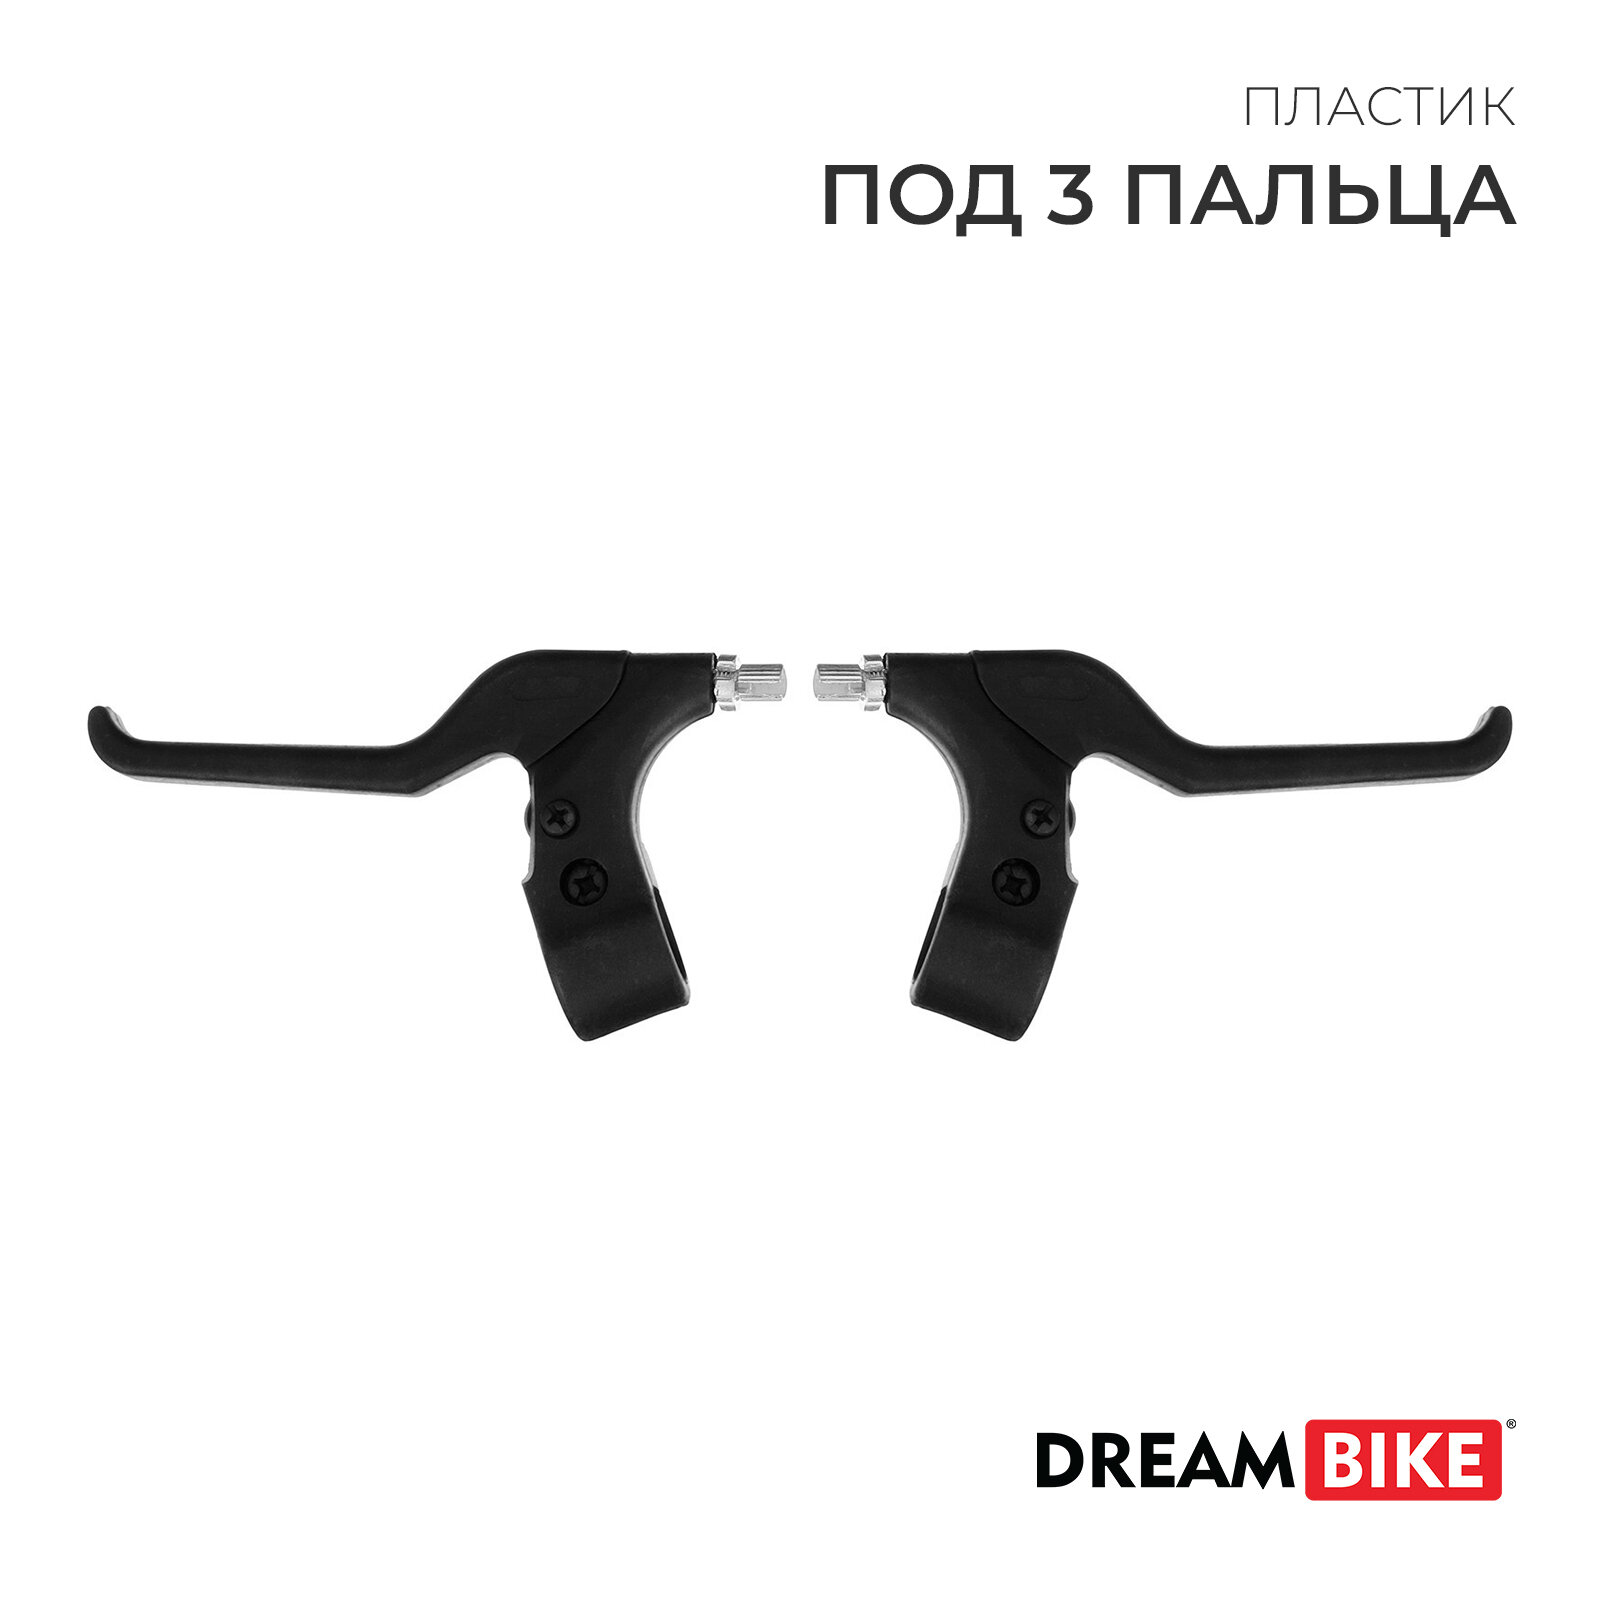 Комплект тормозных ручек Dream Bike (1шт.)